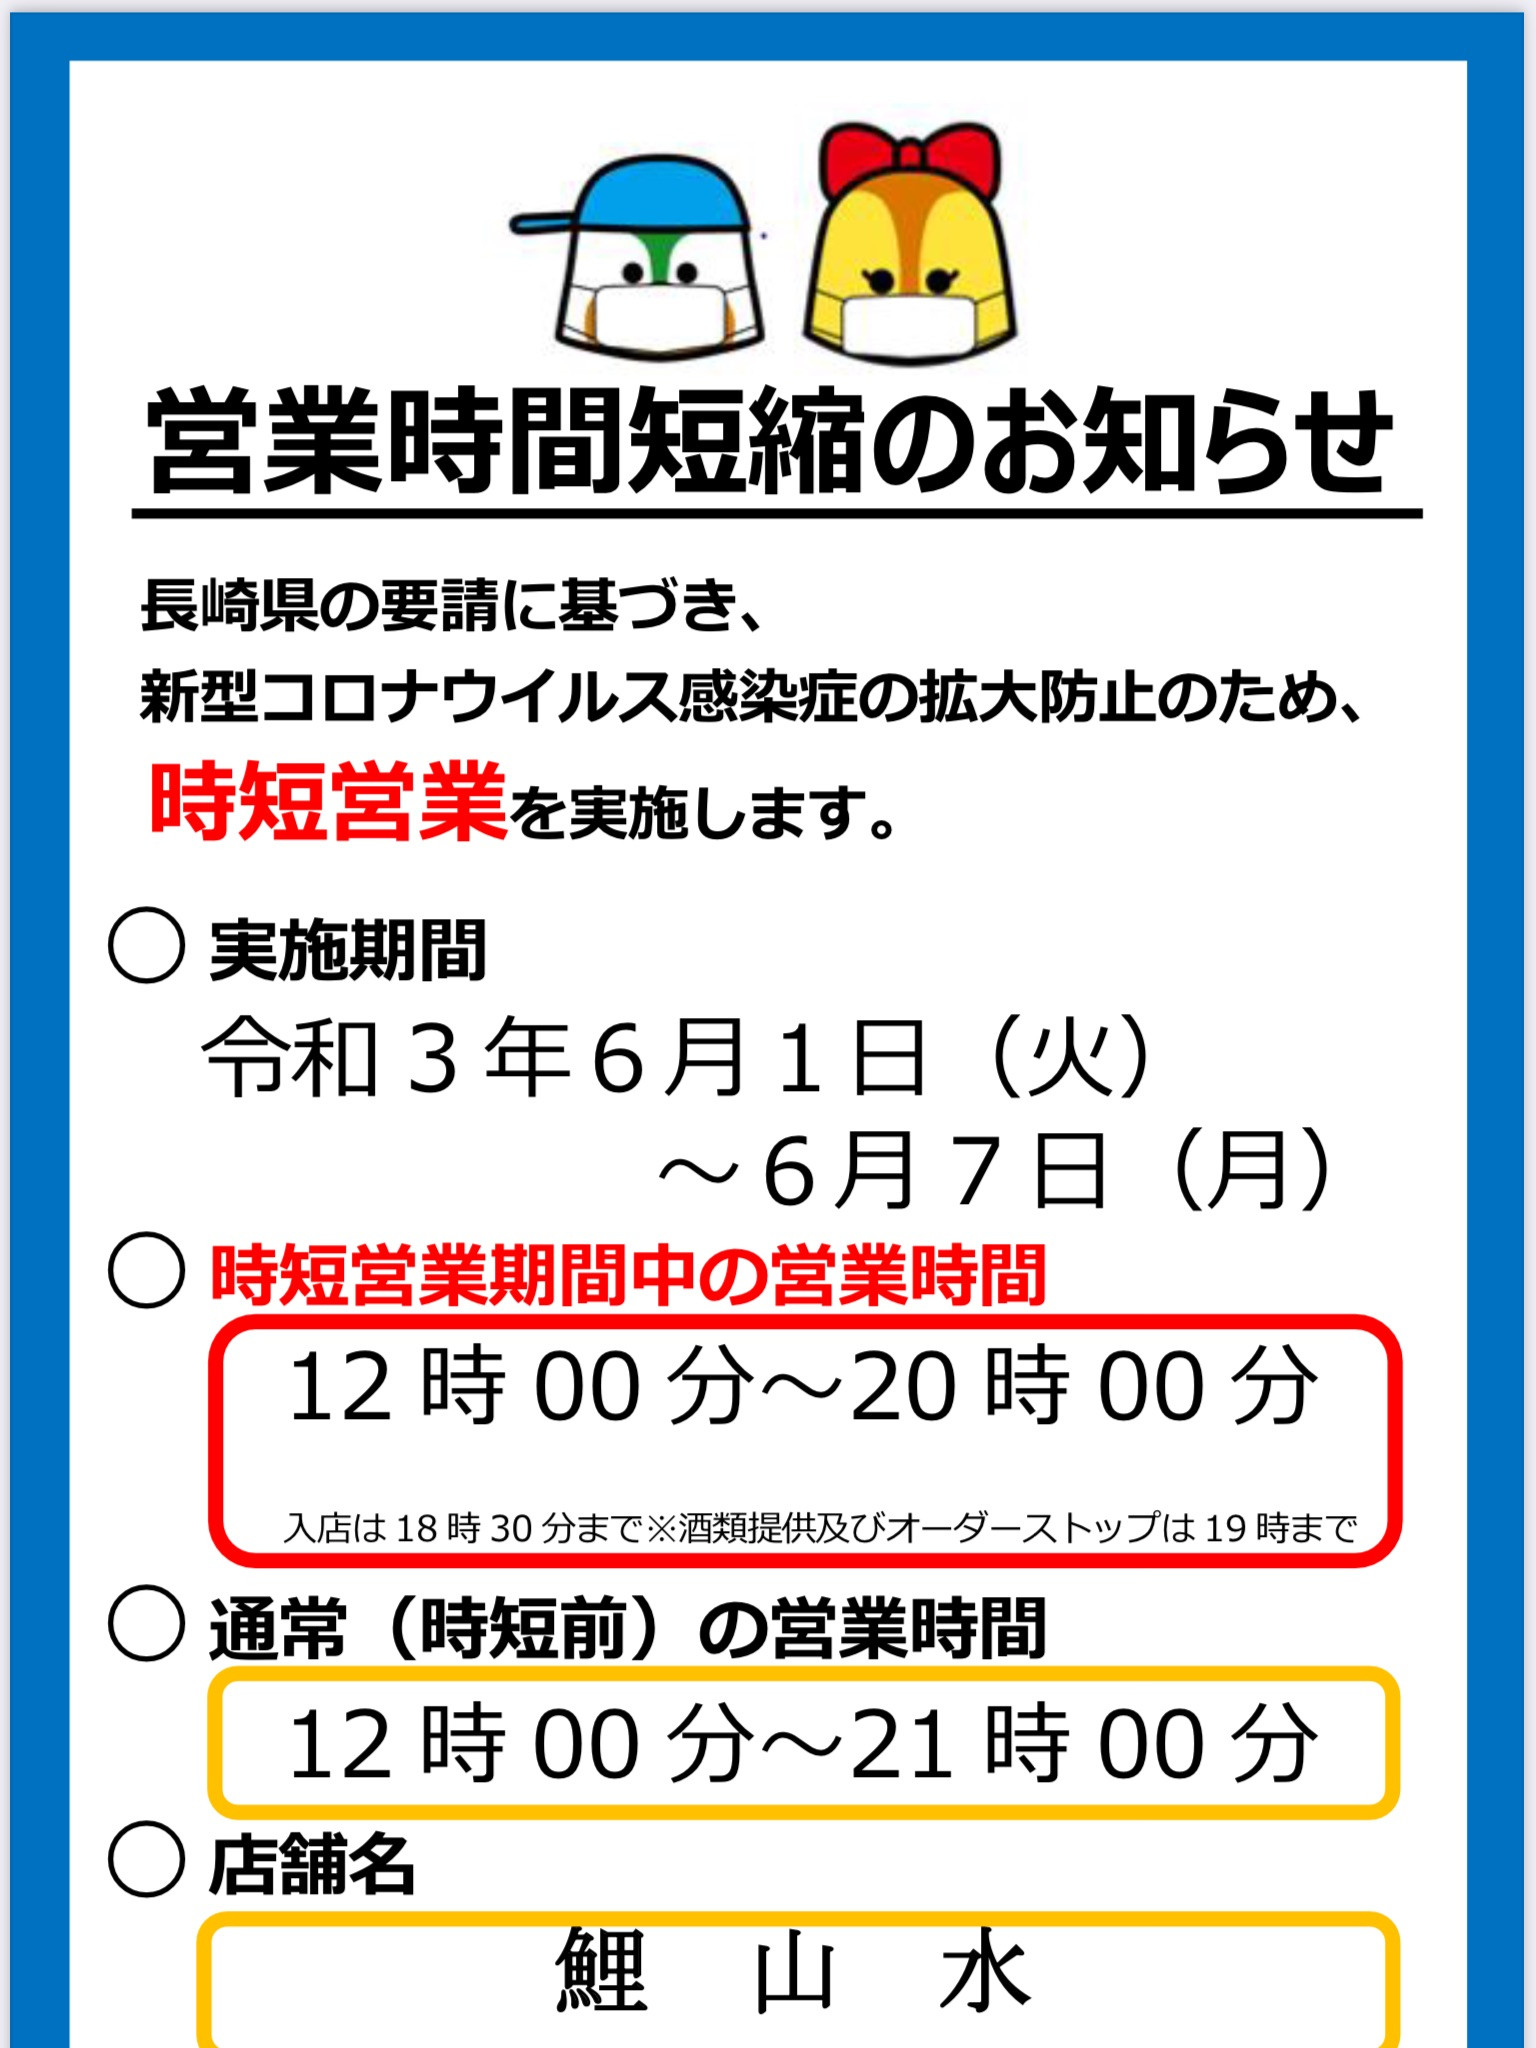 長崎市営業時間短縮要請の延長についてお知らせ